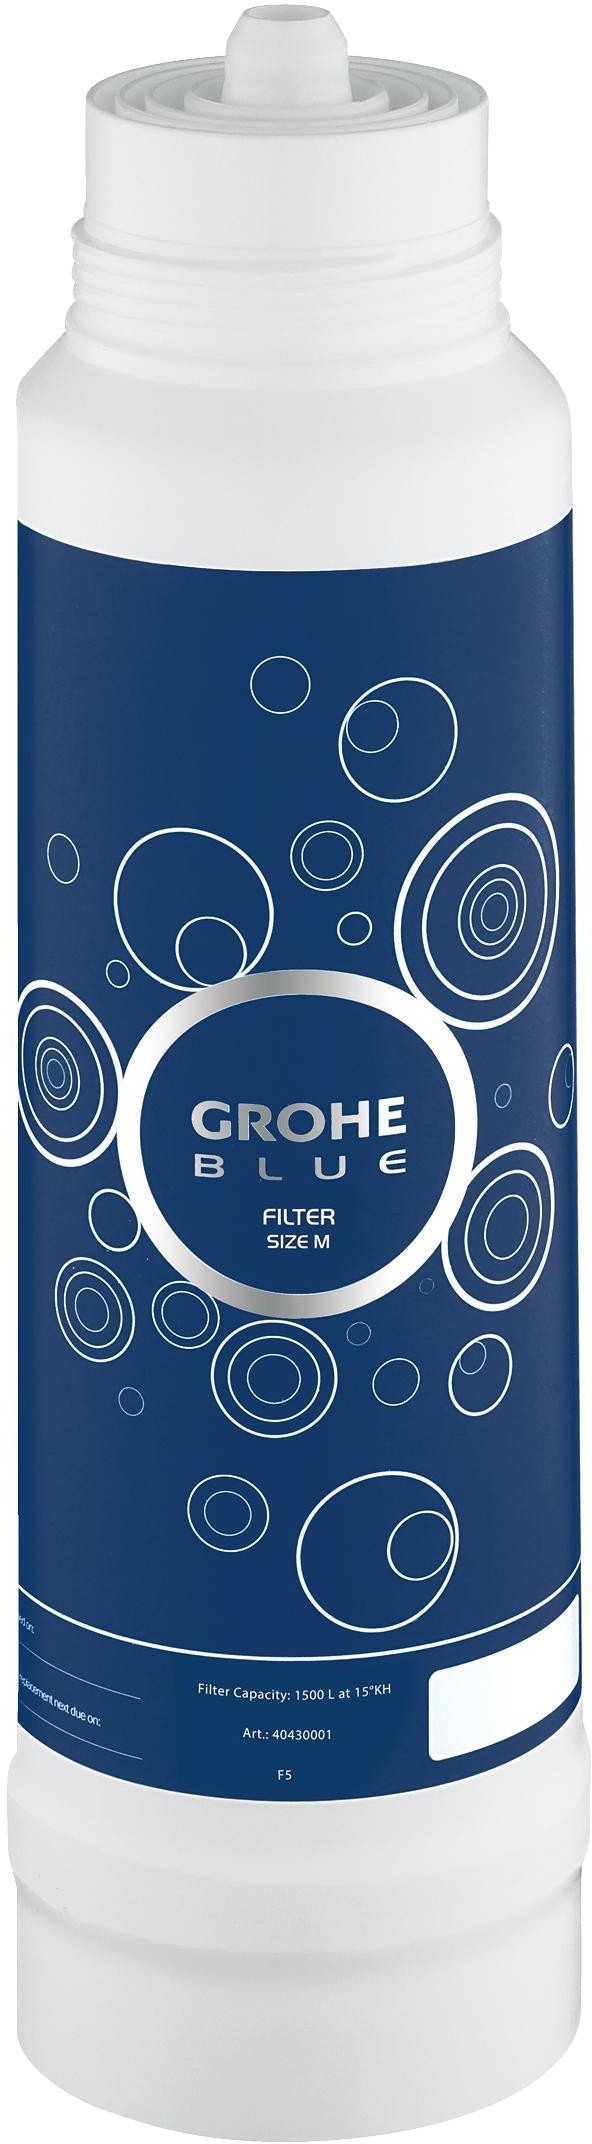 Сменный фильтр Grohe GROHE Blue 40430001